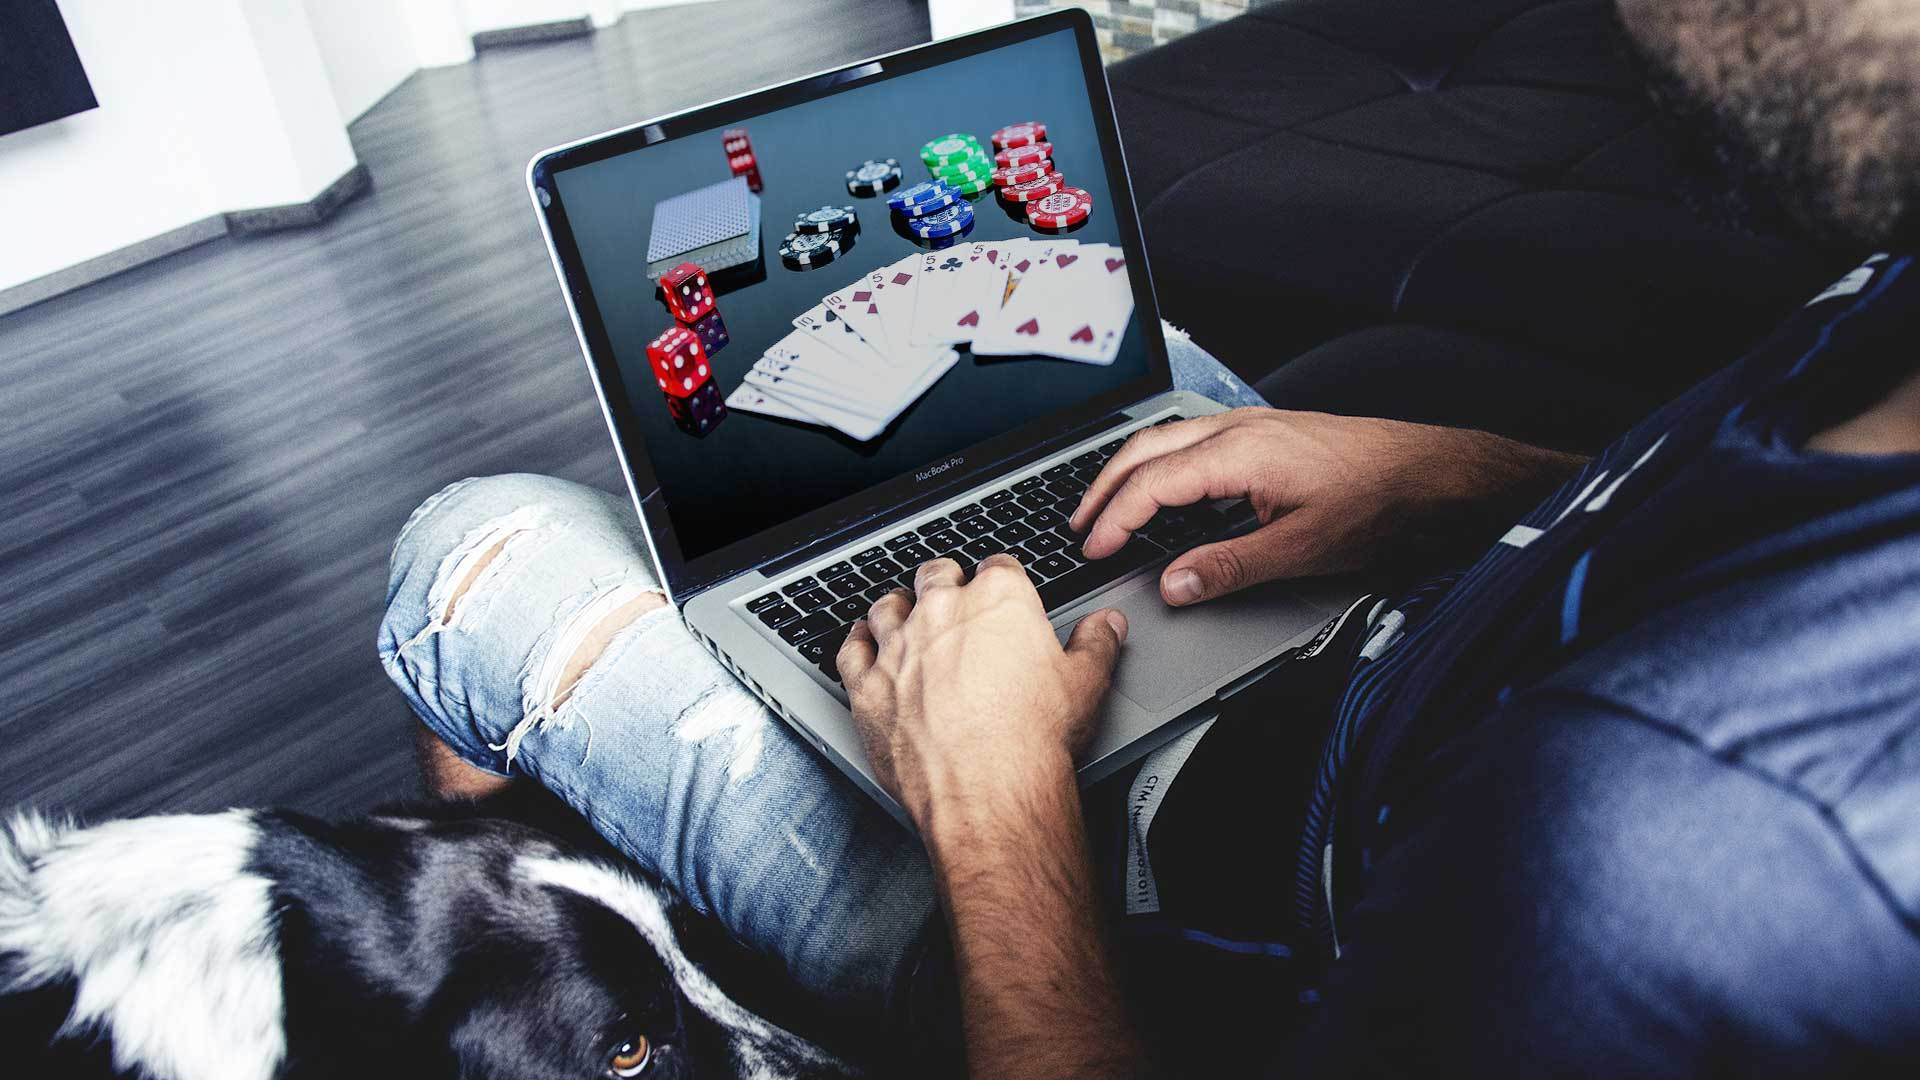 Азартные игры в интернете: вред или развлечение?